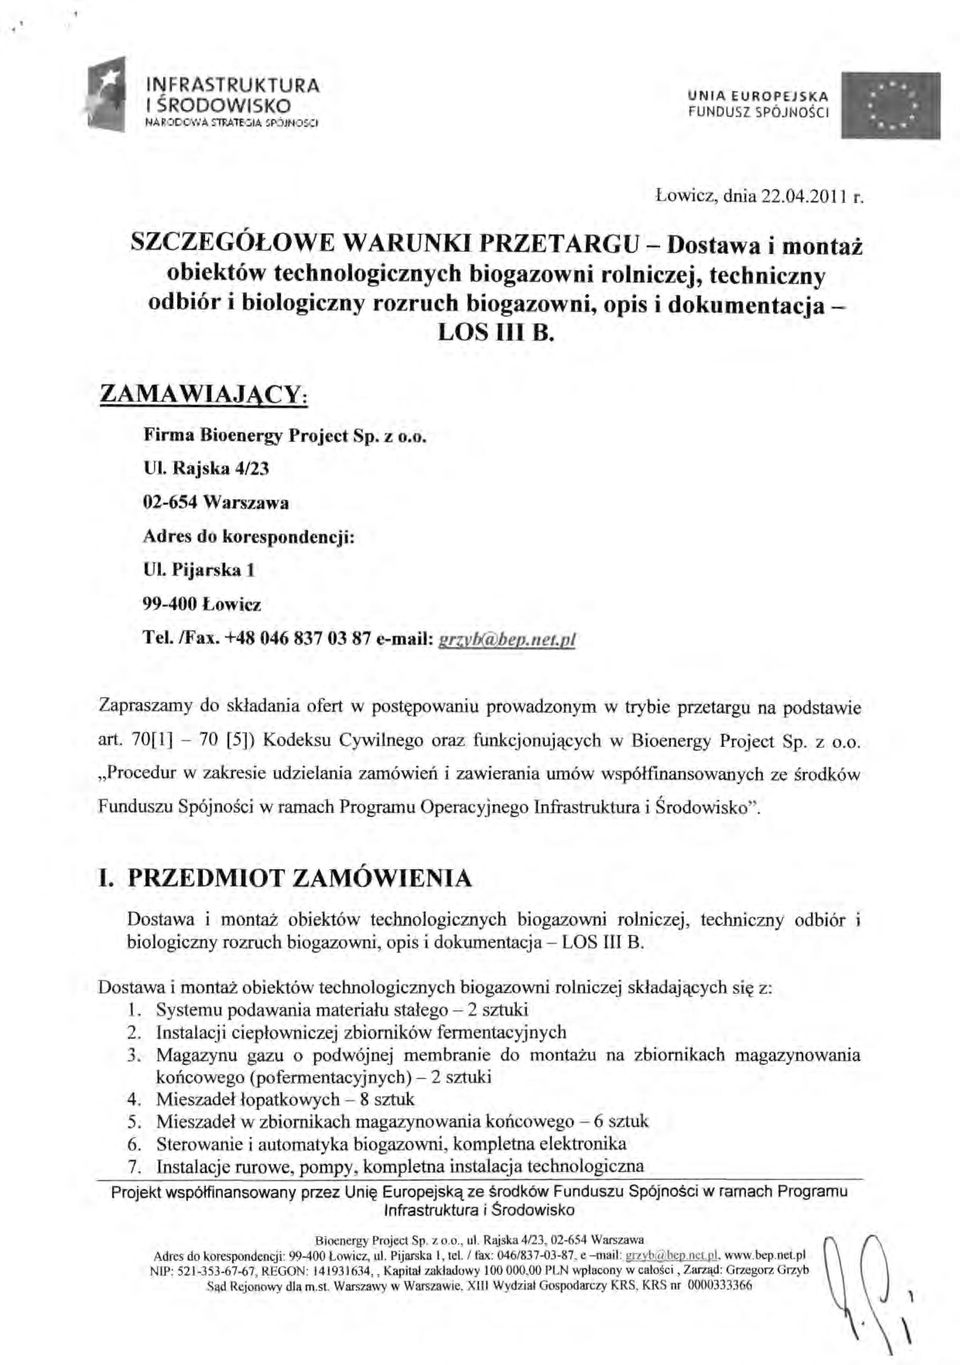 ZAMAWIAJĄCY; Firma Bioenergy Project Sp. z o.o. UL Rajska 4/23 02-654 Warszawa Adres do korespondencji: UL Pijarska l 99-400 Łowicz Tel. /Fax. +48 046 837 03 87 e-mail: erzvb(a)bed.net.